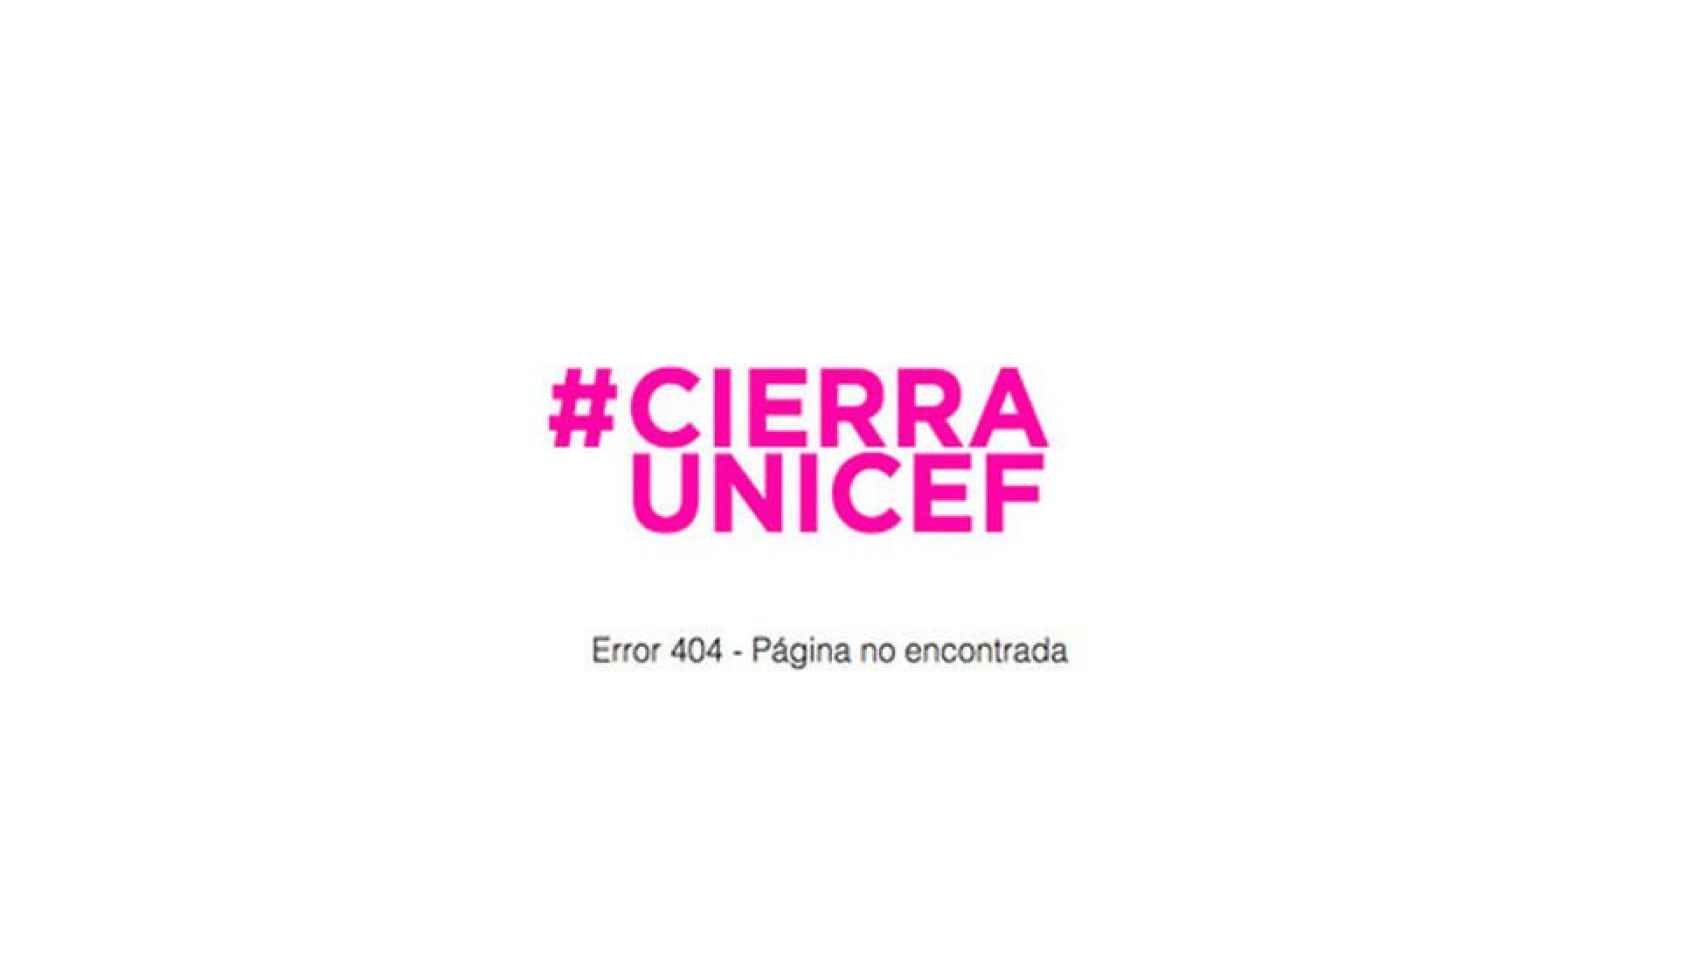 El 'hashtag' de la campaña #cierraunicef